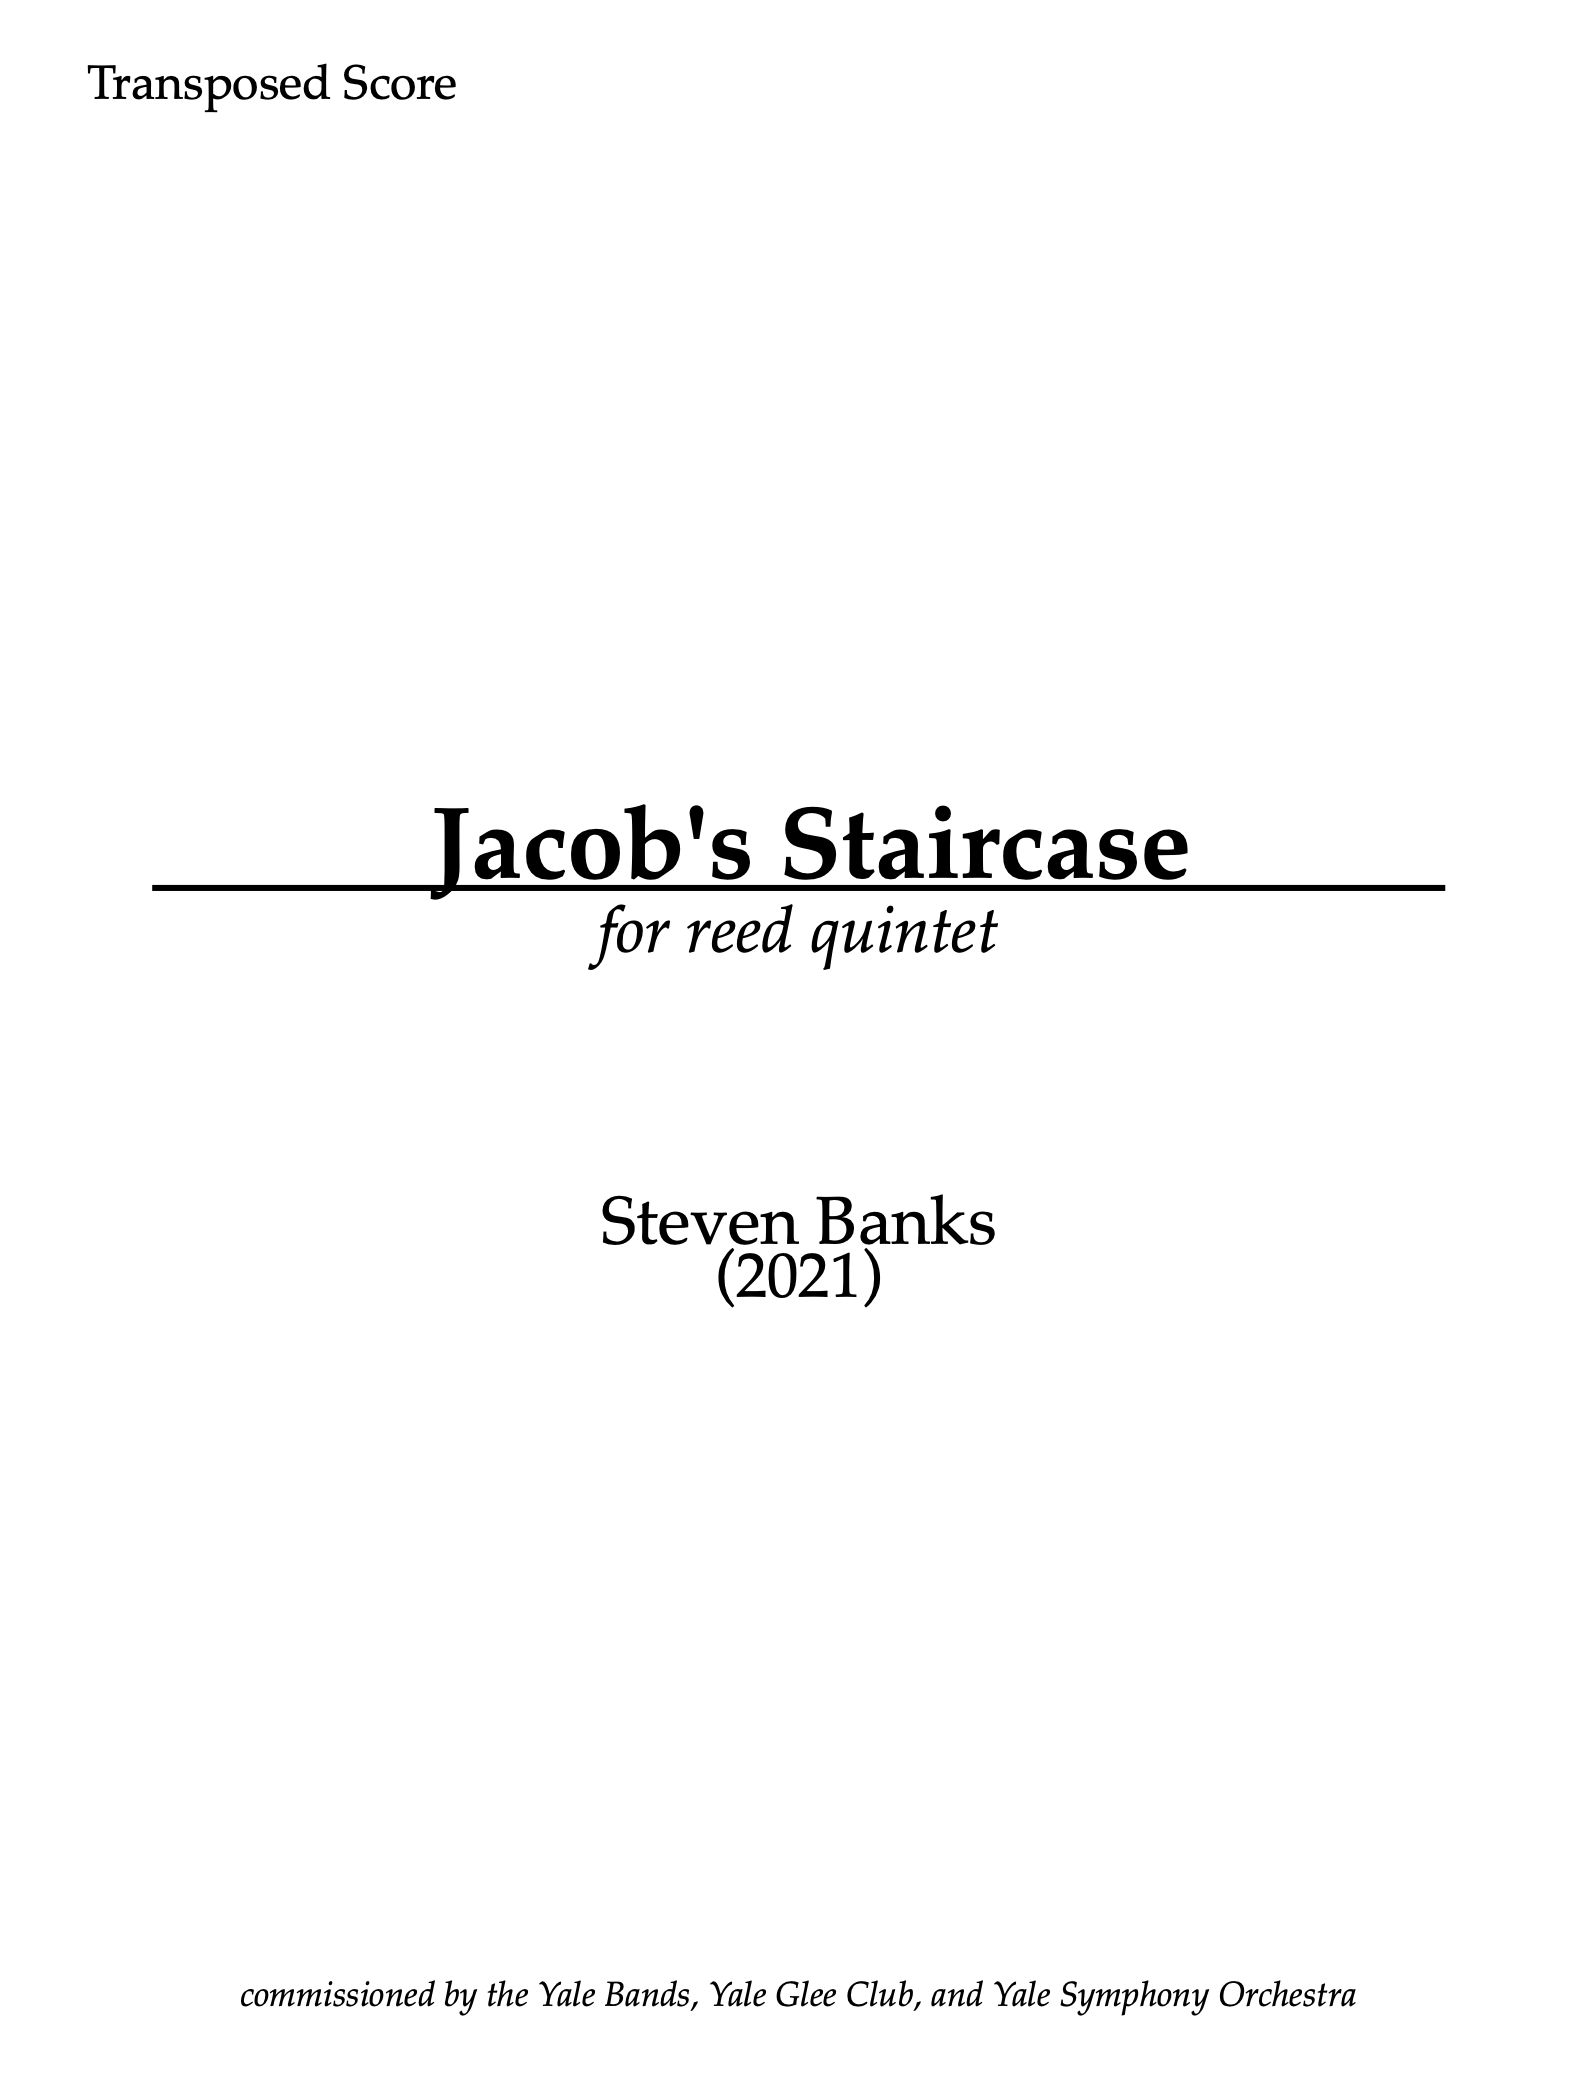 Jacob's Staircase (PDF Version) by Steven Banks